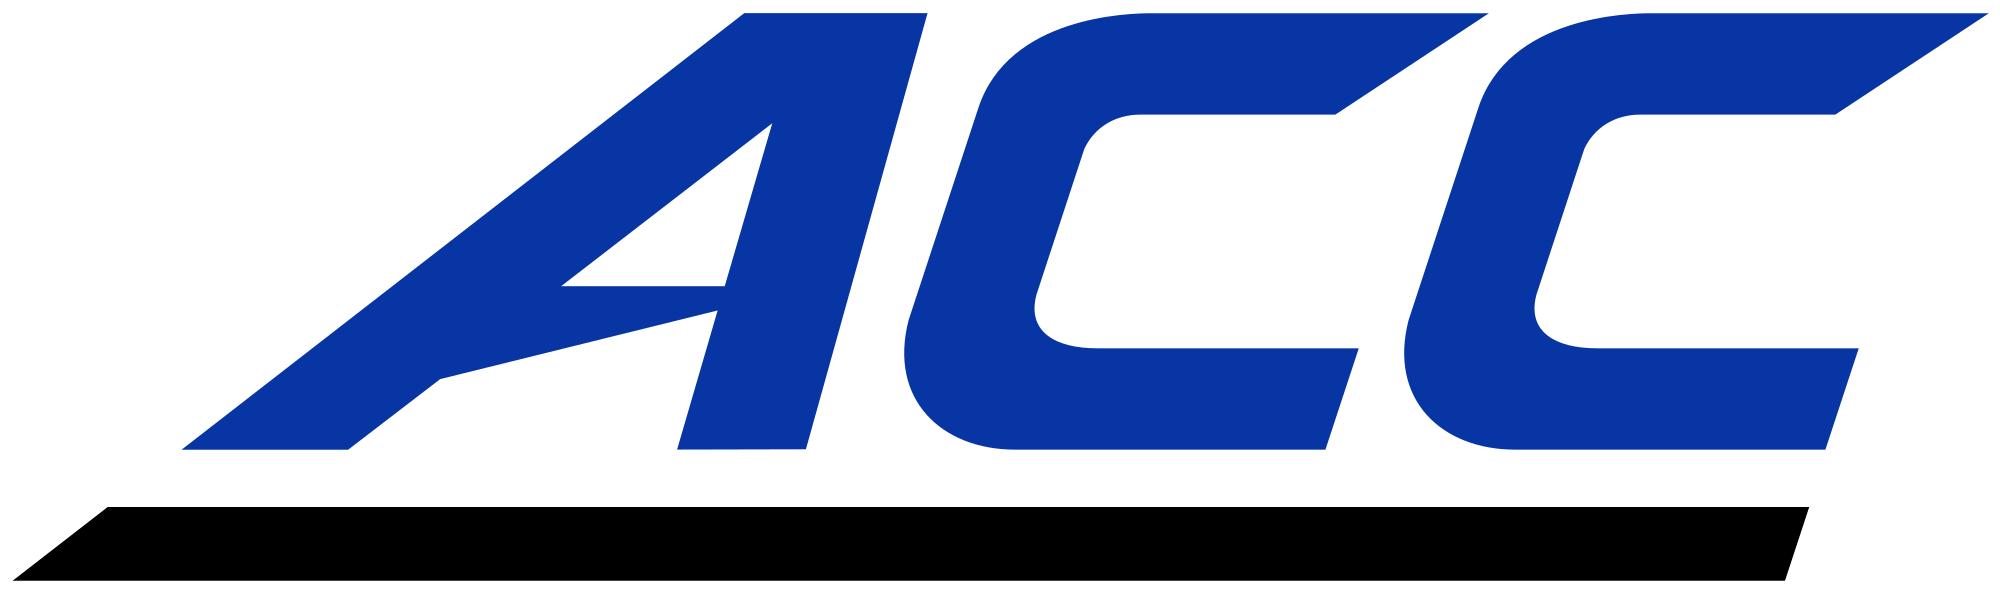 Duke Football Logo - ACC logo in Duke colors.svg